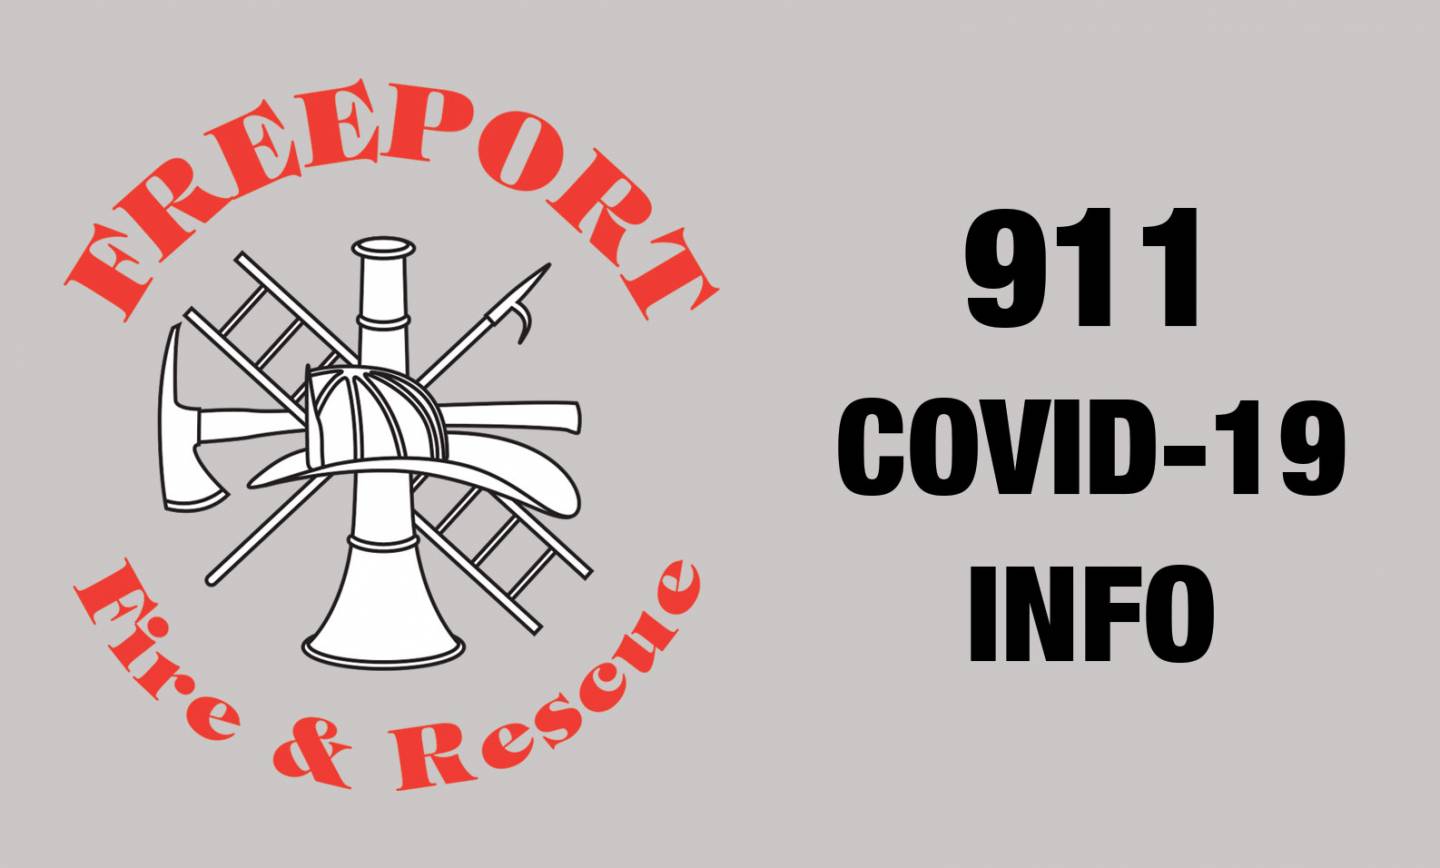 CALLING 911-FREEPORT FIRE DEPT & COVID-19